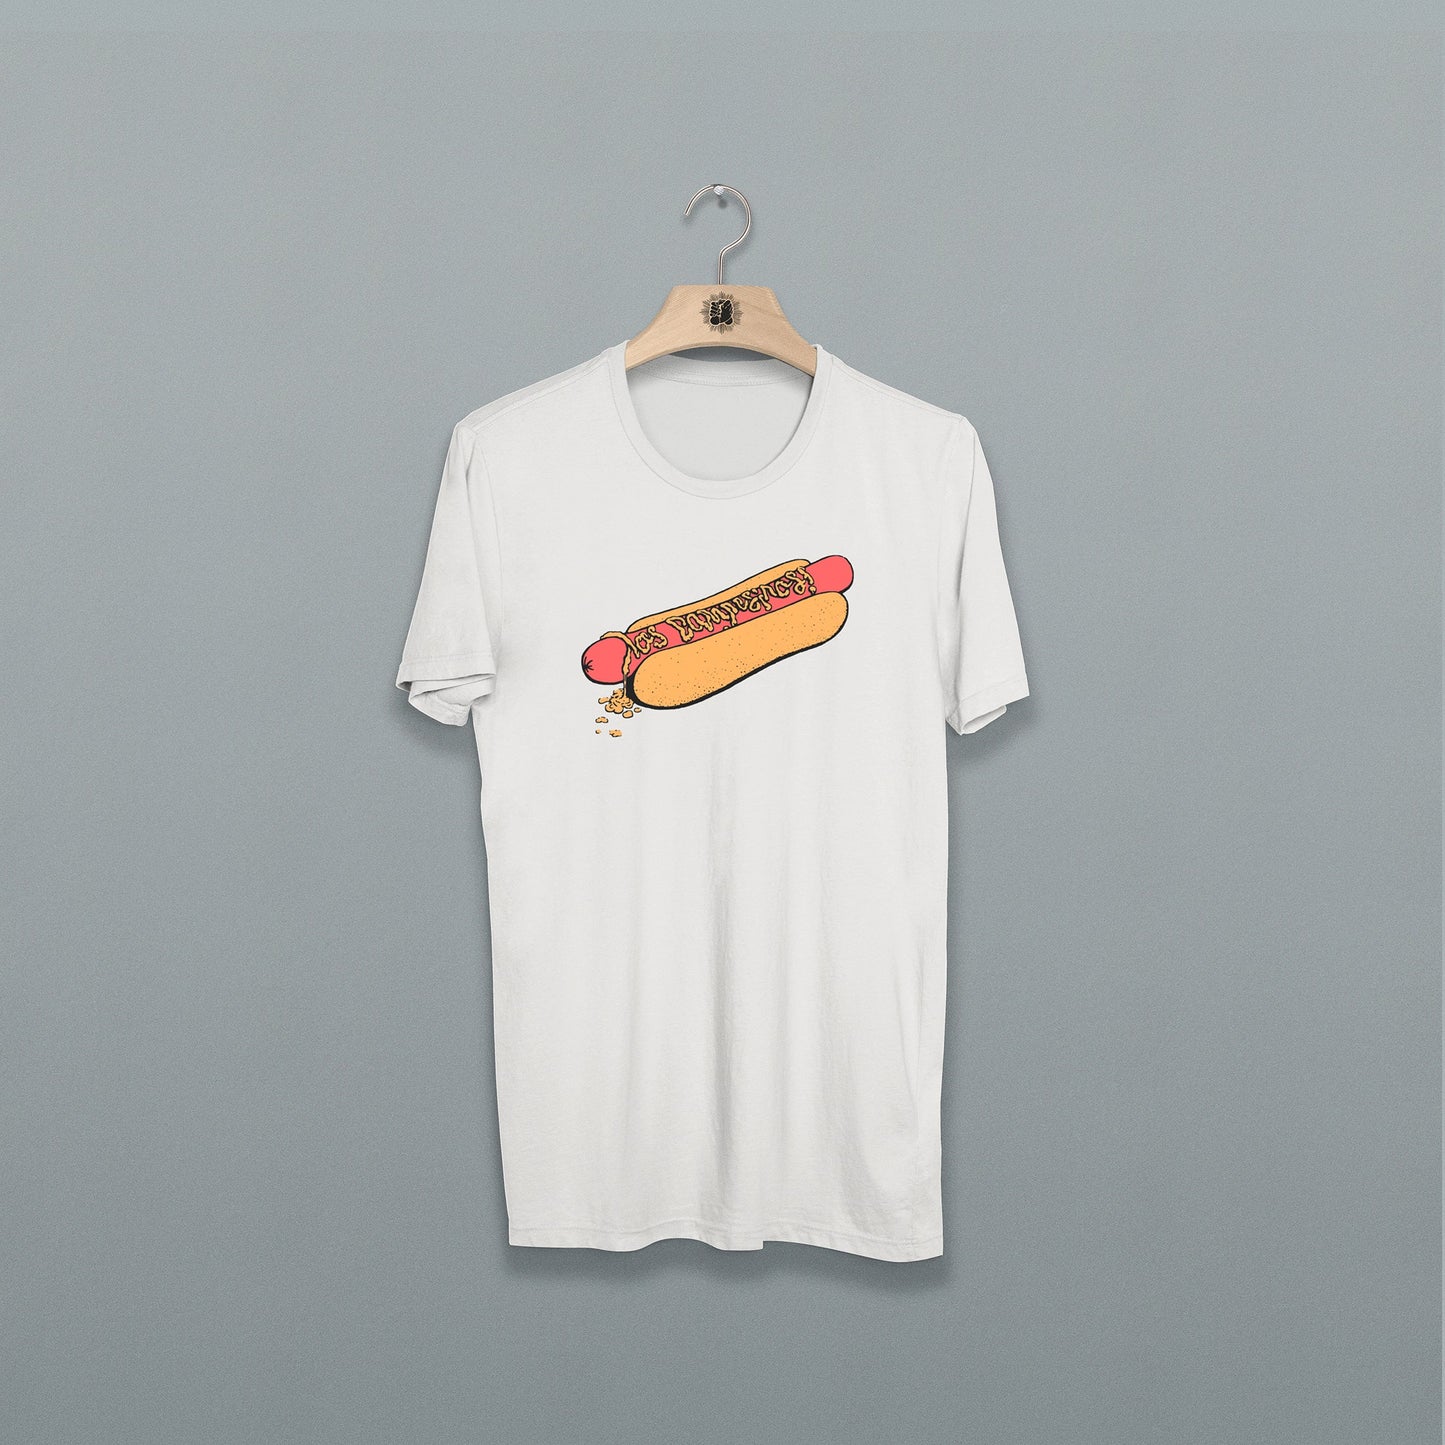 Los Campesinos! Hot Dog T-shirt | Los Campesinos! Official Store